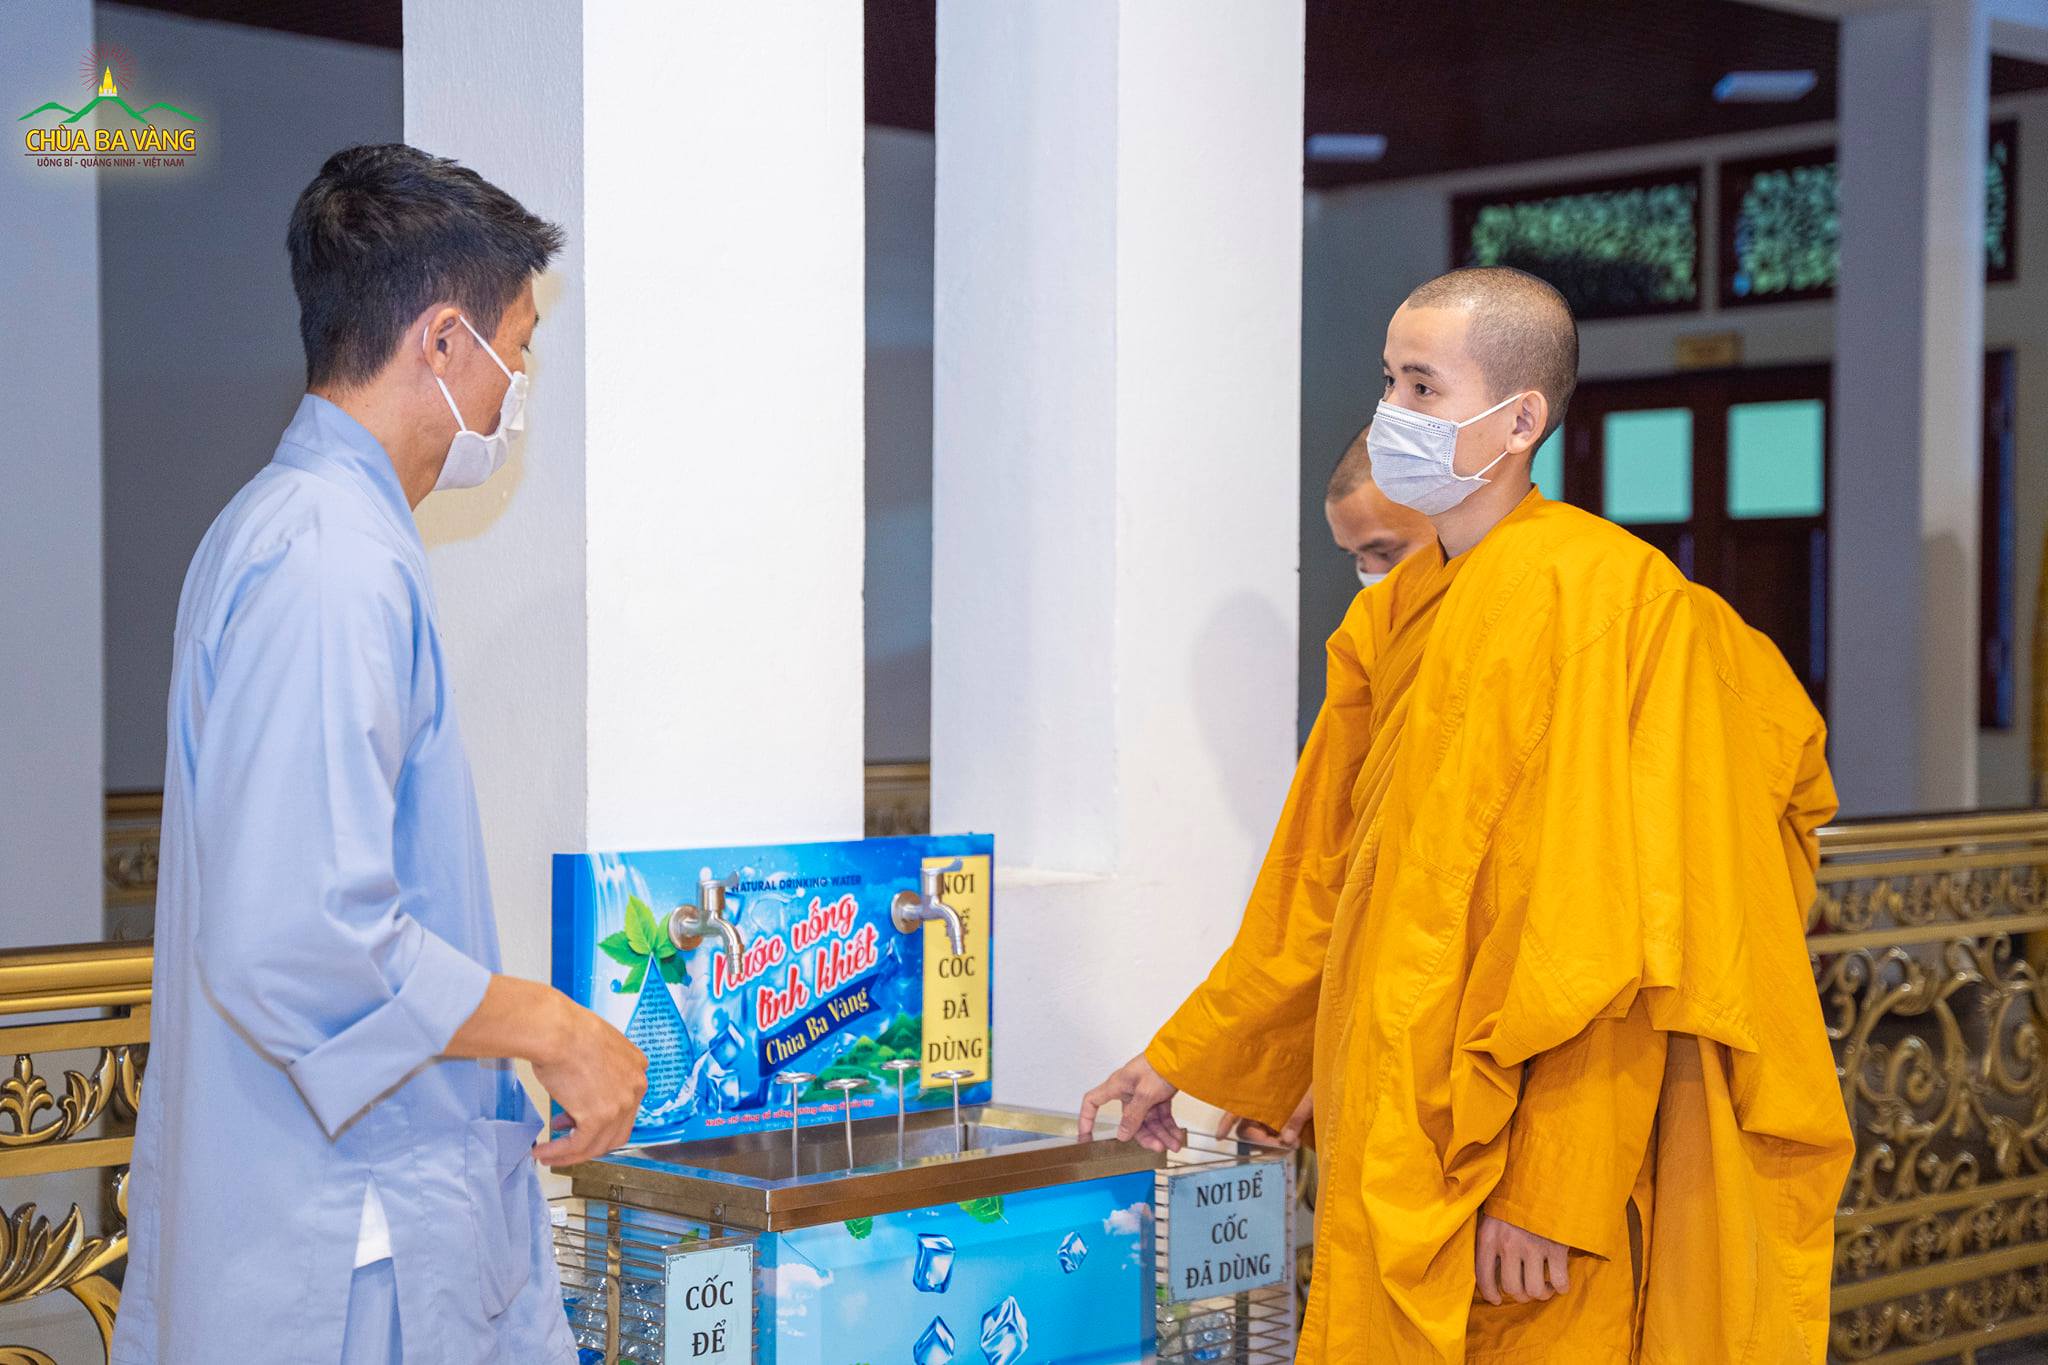 Chư Tăng chùa Ba Vàng đi kiểm tra hệ thống nước uống cho khu vực сáсн lу độc lập